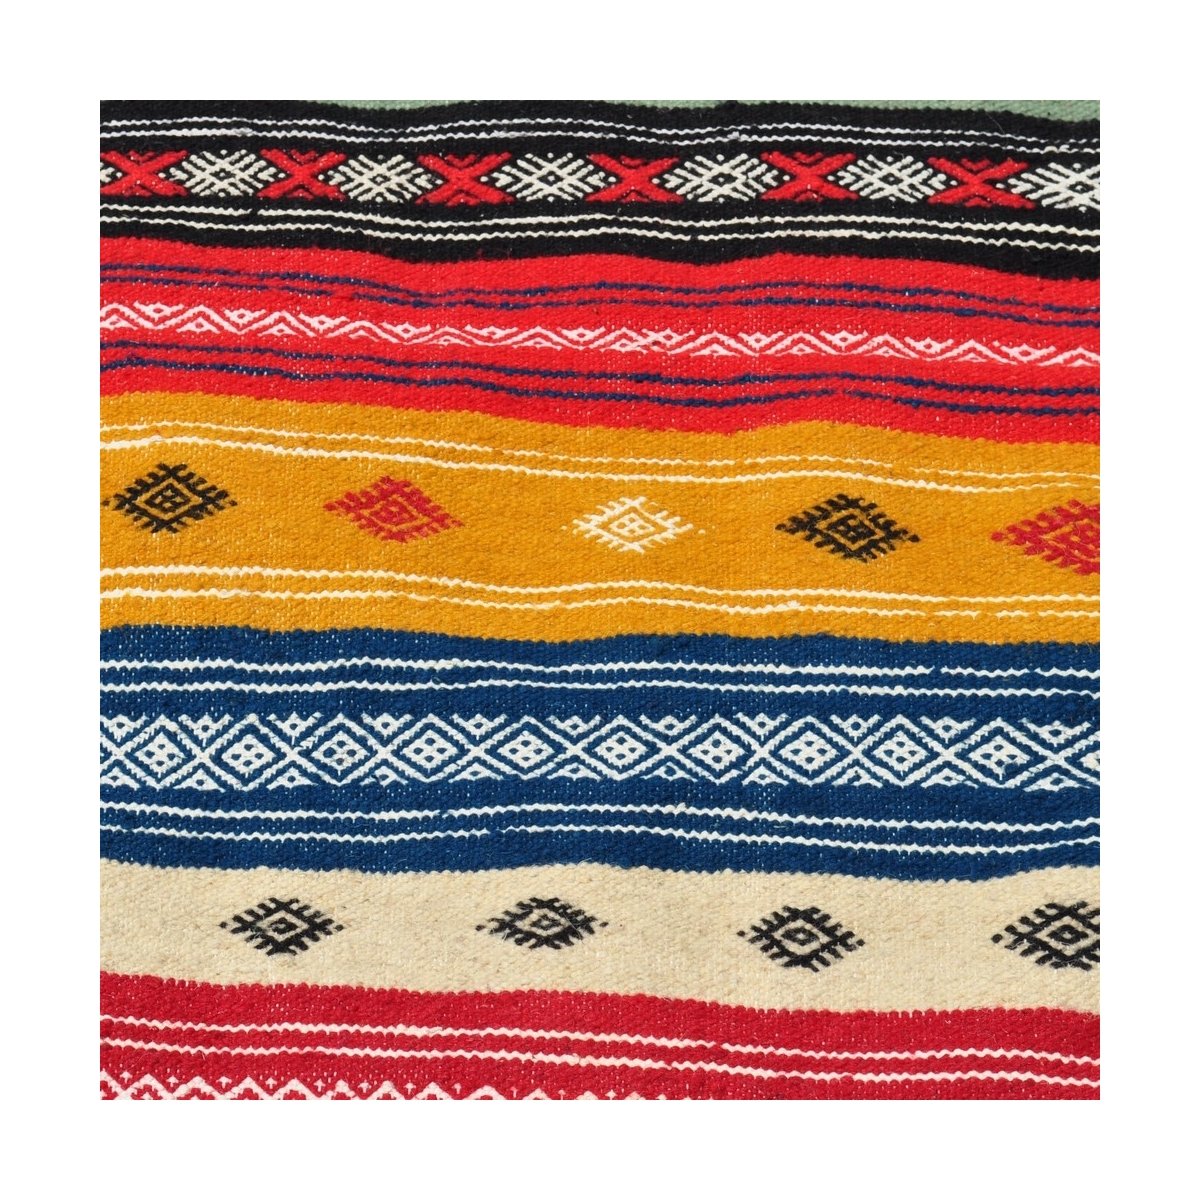 Tapete berbere Tapete Kilim longo Rouhia 70x200 Multicor (Tecidos à mão, Lã) Tapete tunisiano kilim, estilo marroquino. Tapete r